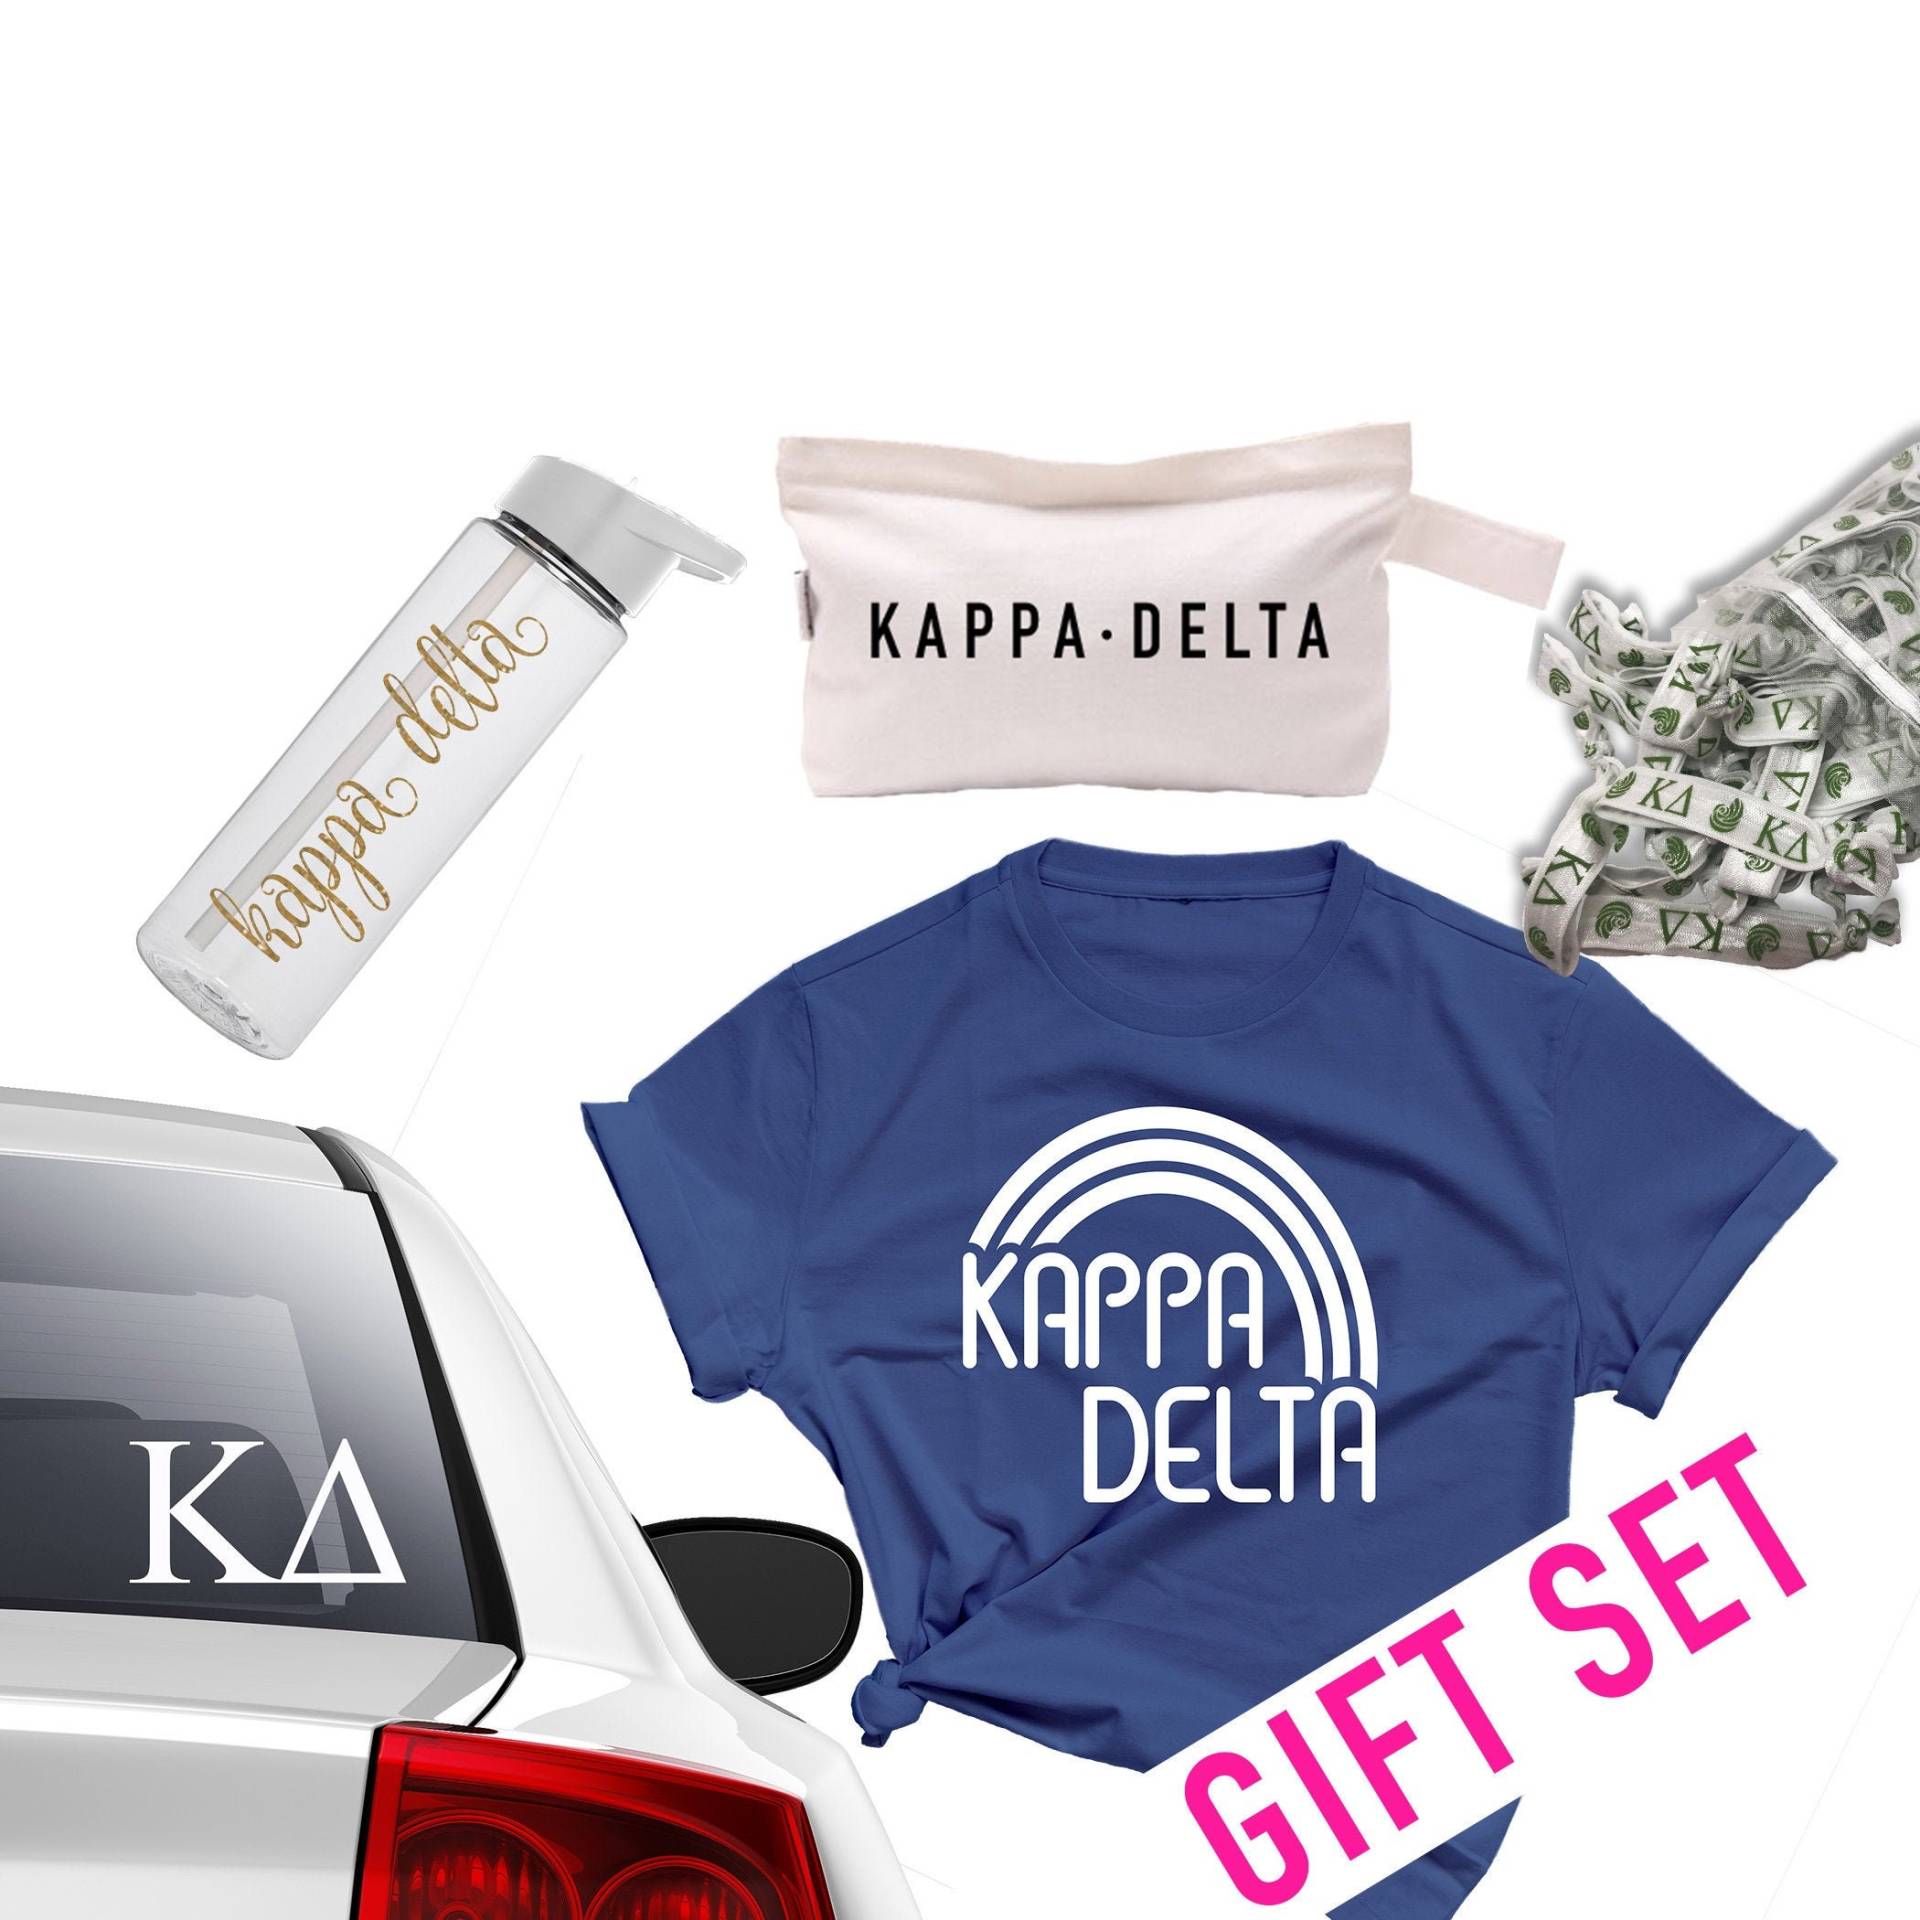 Kappa Delta Merch Set - Sorority Bundle Gebotstagsgeschenke von TheLuxuryGirl